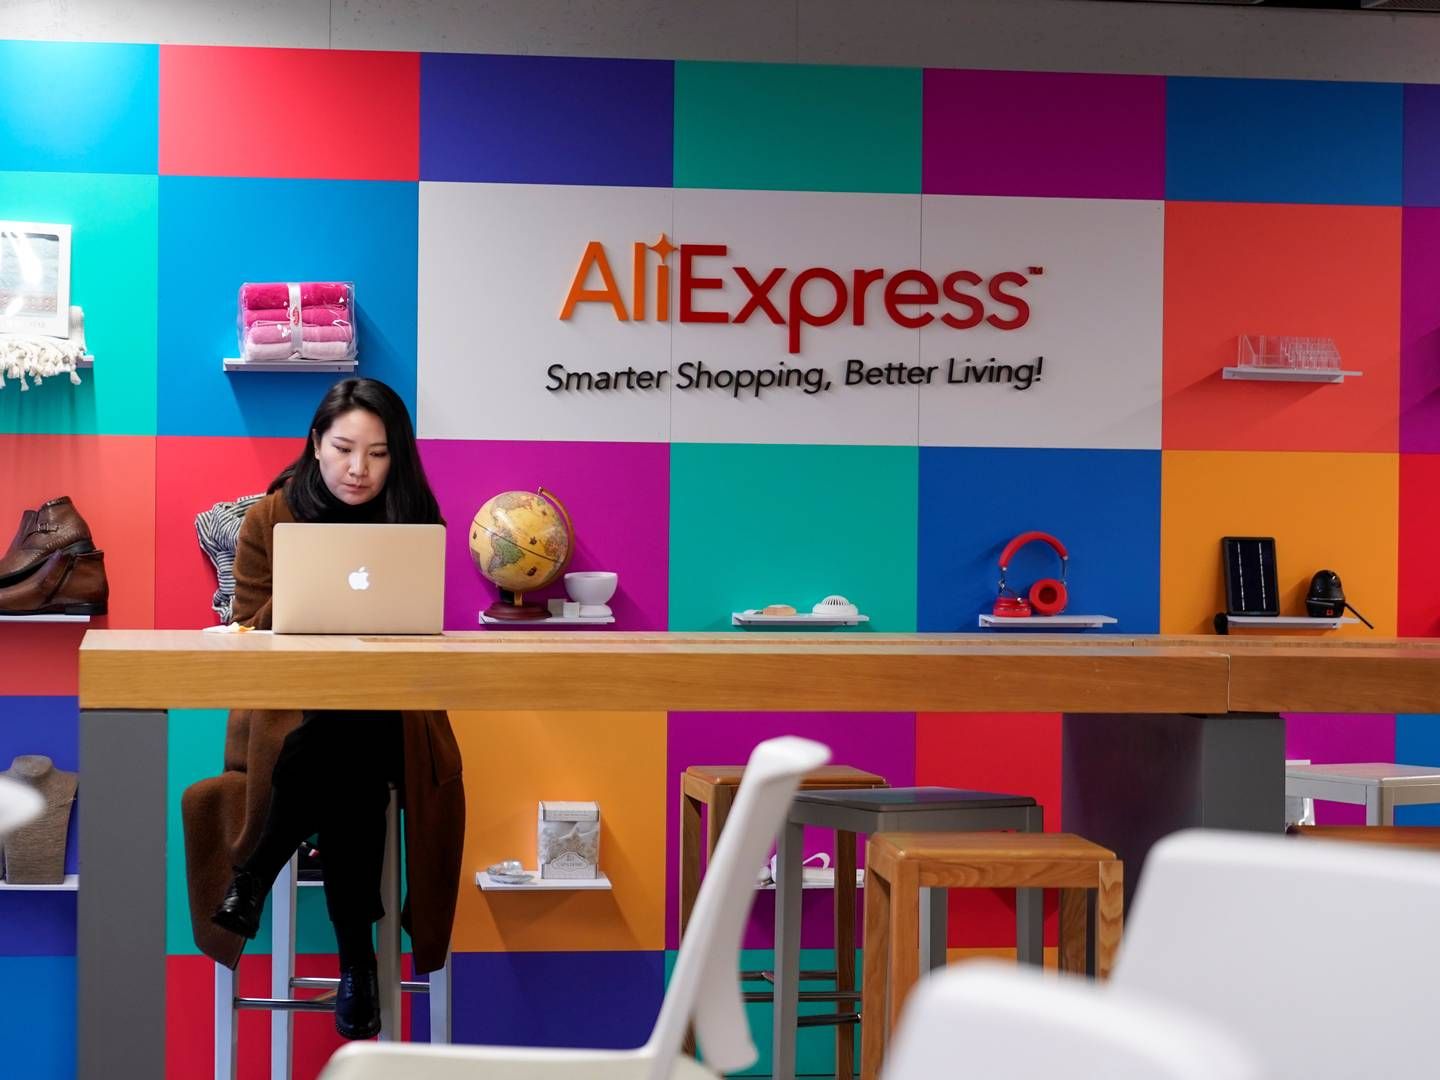 Aliexpress er en kernedel af den kinesiske detailkoncern Alibaba